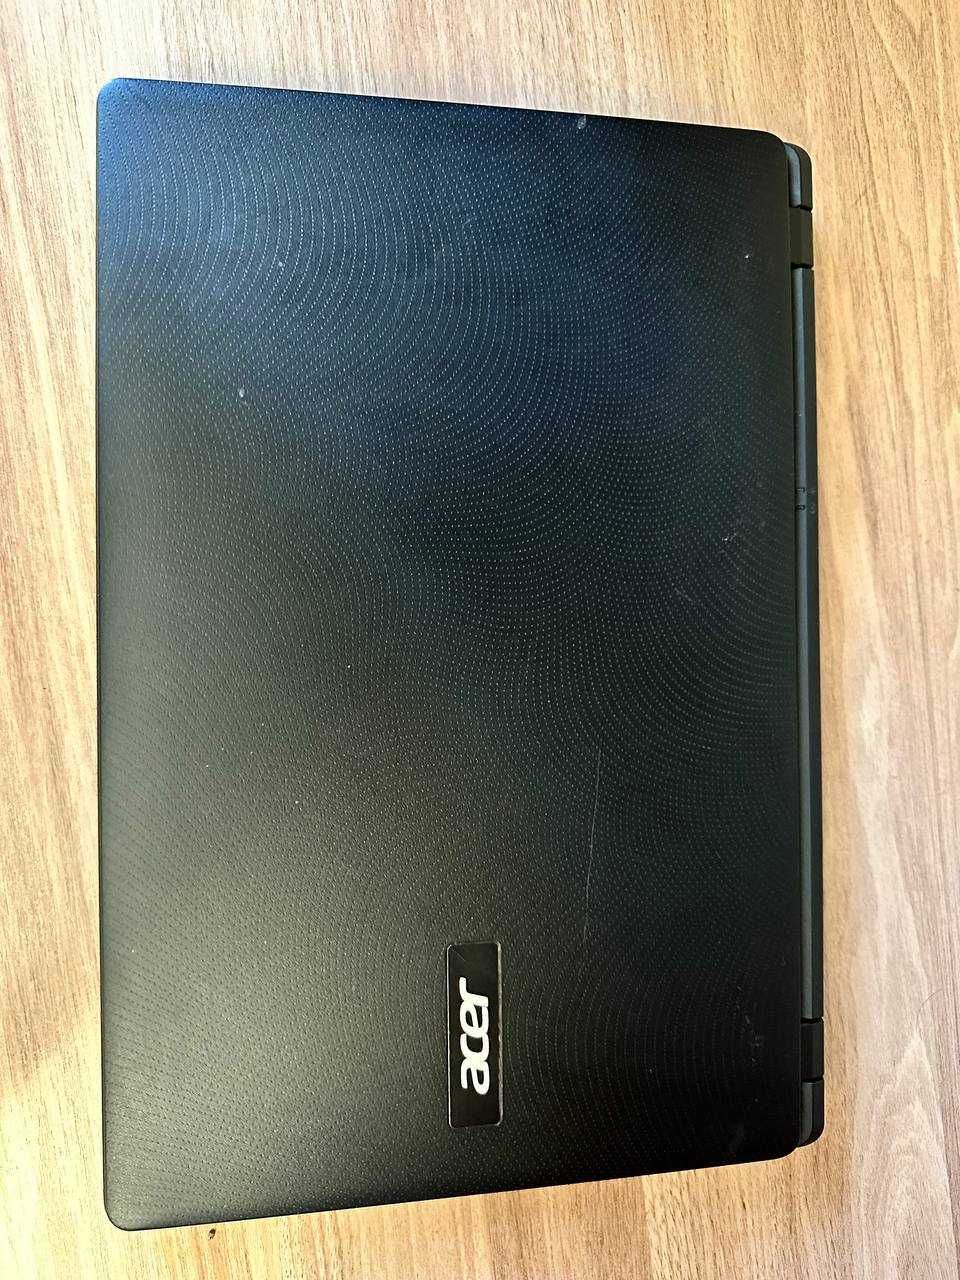 Продается недорогой ноутбук Acer Extensa 15.